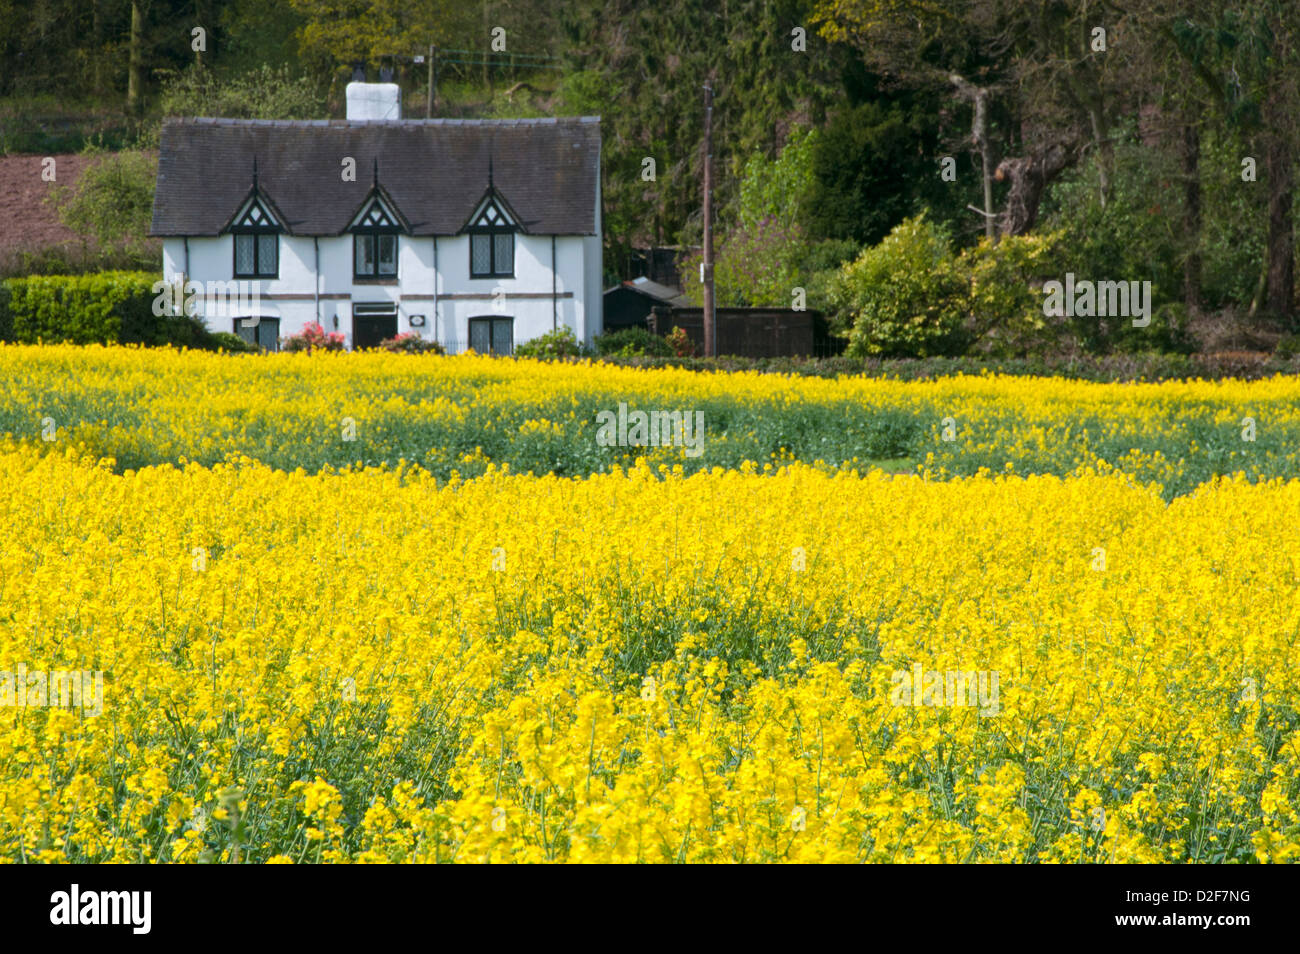 Grazioso Cottage in bianco e giallo campo di colza, vicino Peckforton, Cheshire, Inghilterra, Regno Unito Foto Stock